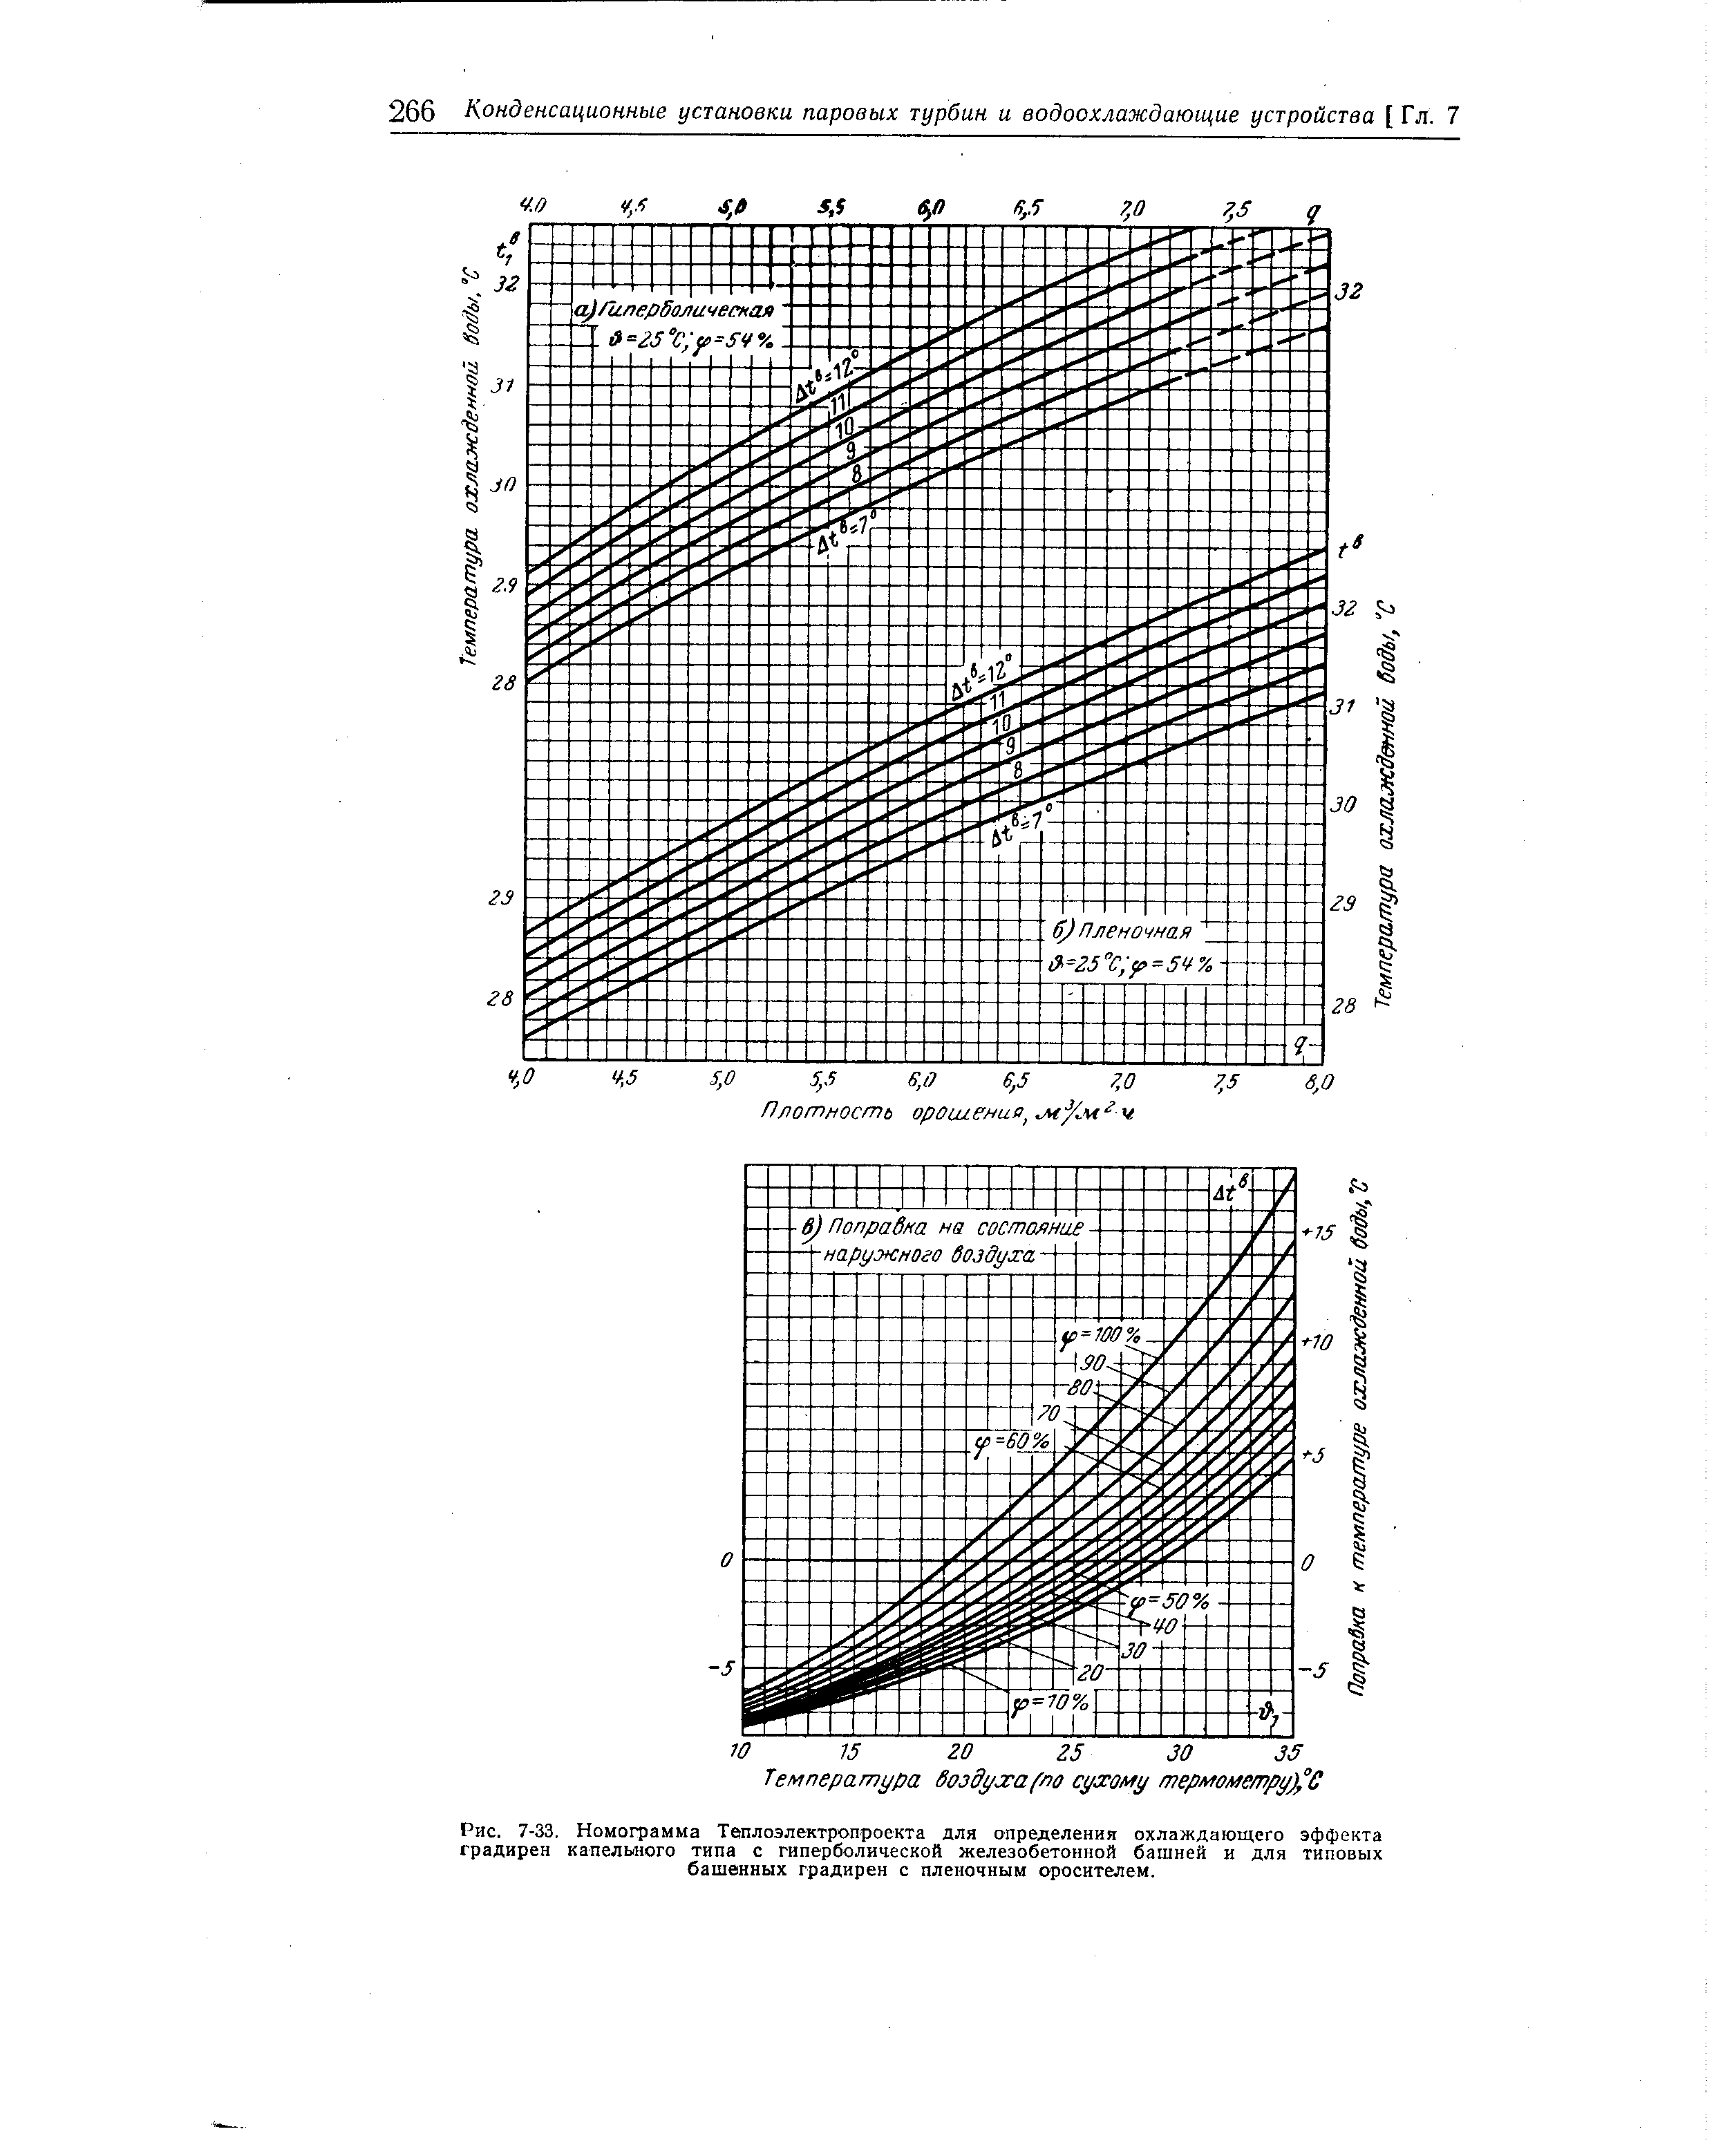 Рис. 7-33, Номограмма Теплоэлектропроекта для определения охлаждающего эффекта градирен капельного типа с гиперболической железобетонной башней и для типовых башенных градирен с пленочным оросителем.
